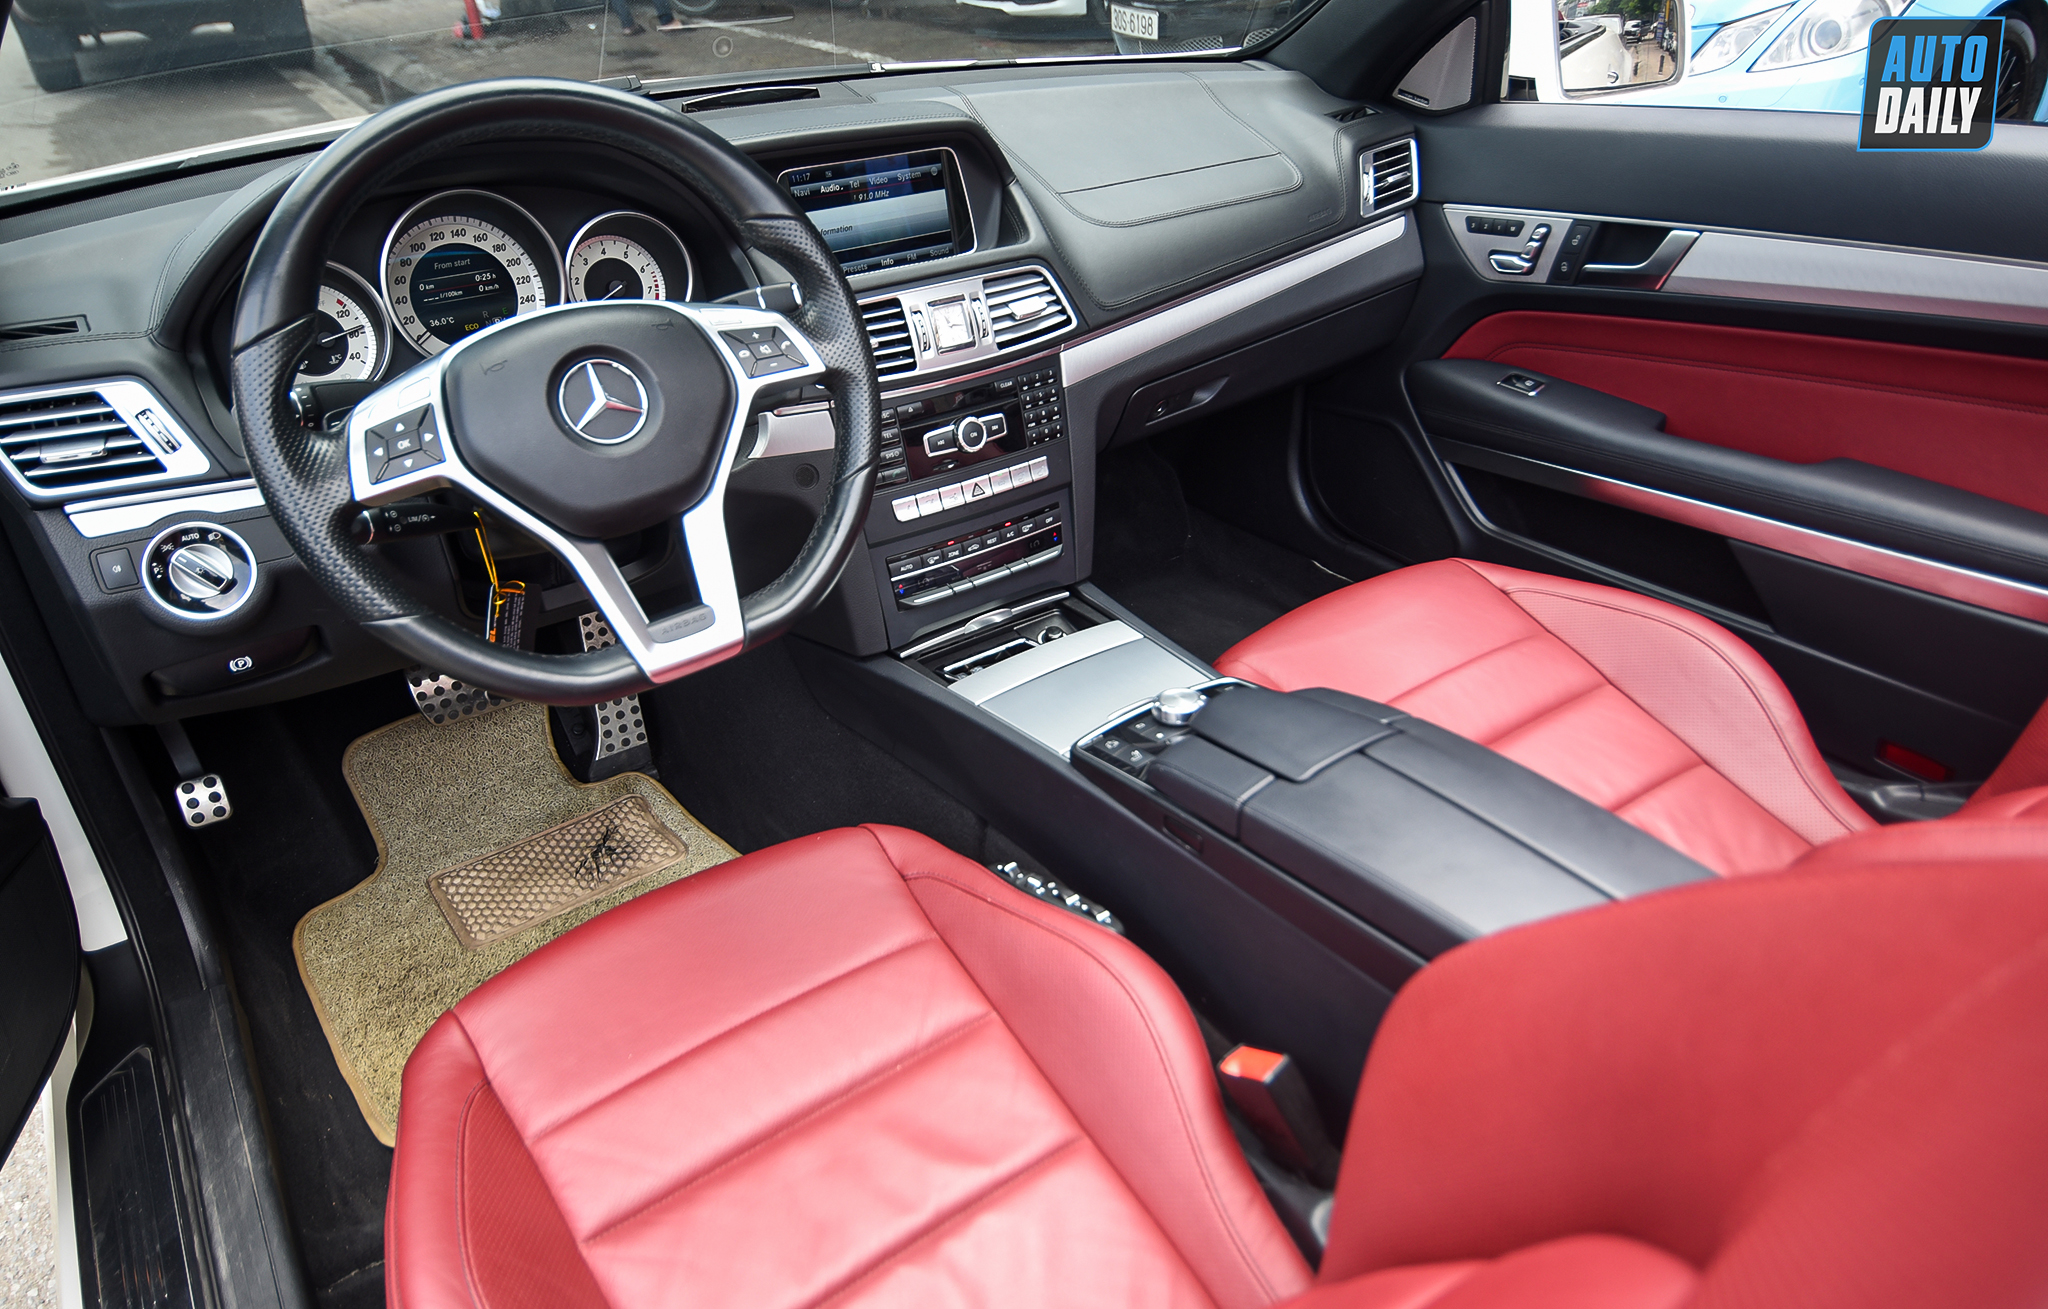 Mui trần hàng hiếm Mercedes-Benz E400 Cabriolet lên sàn xe cũ giá hơn 2 tỷ adt-4937-copy.jpg